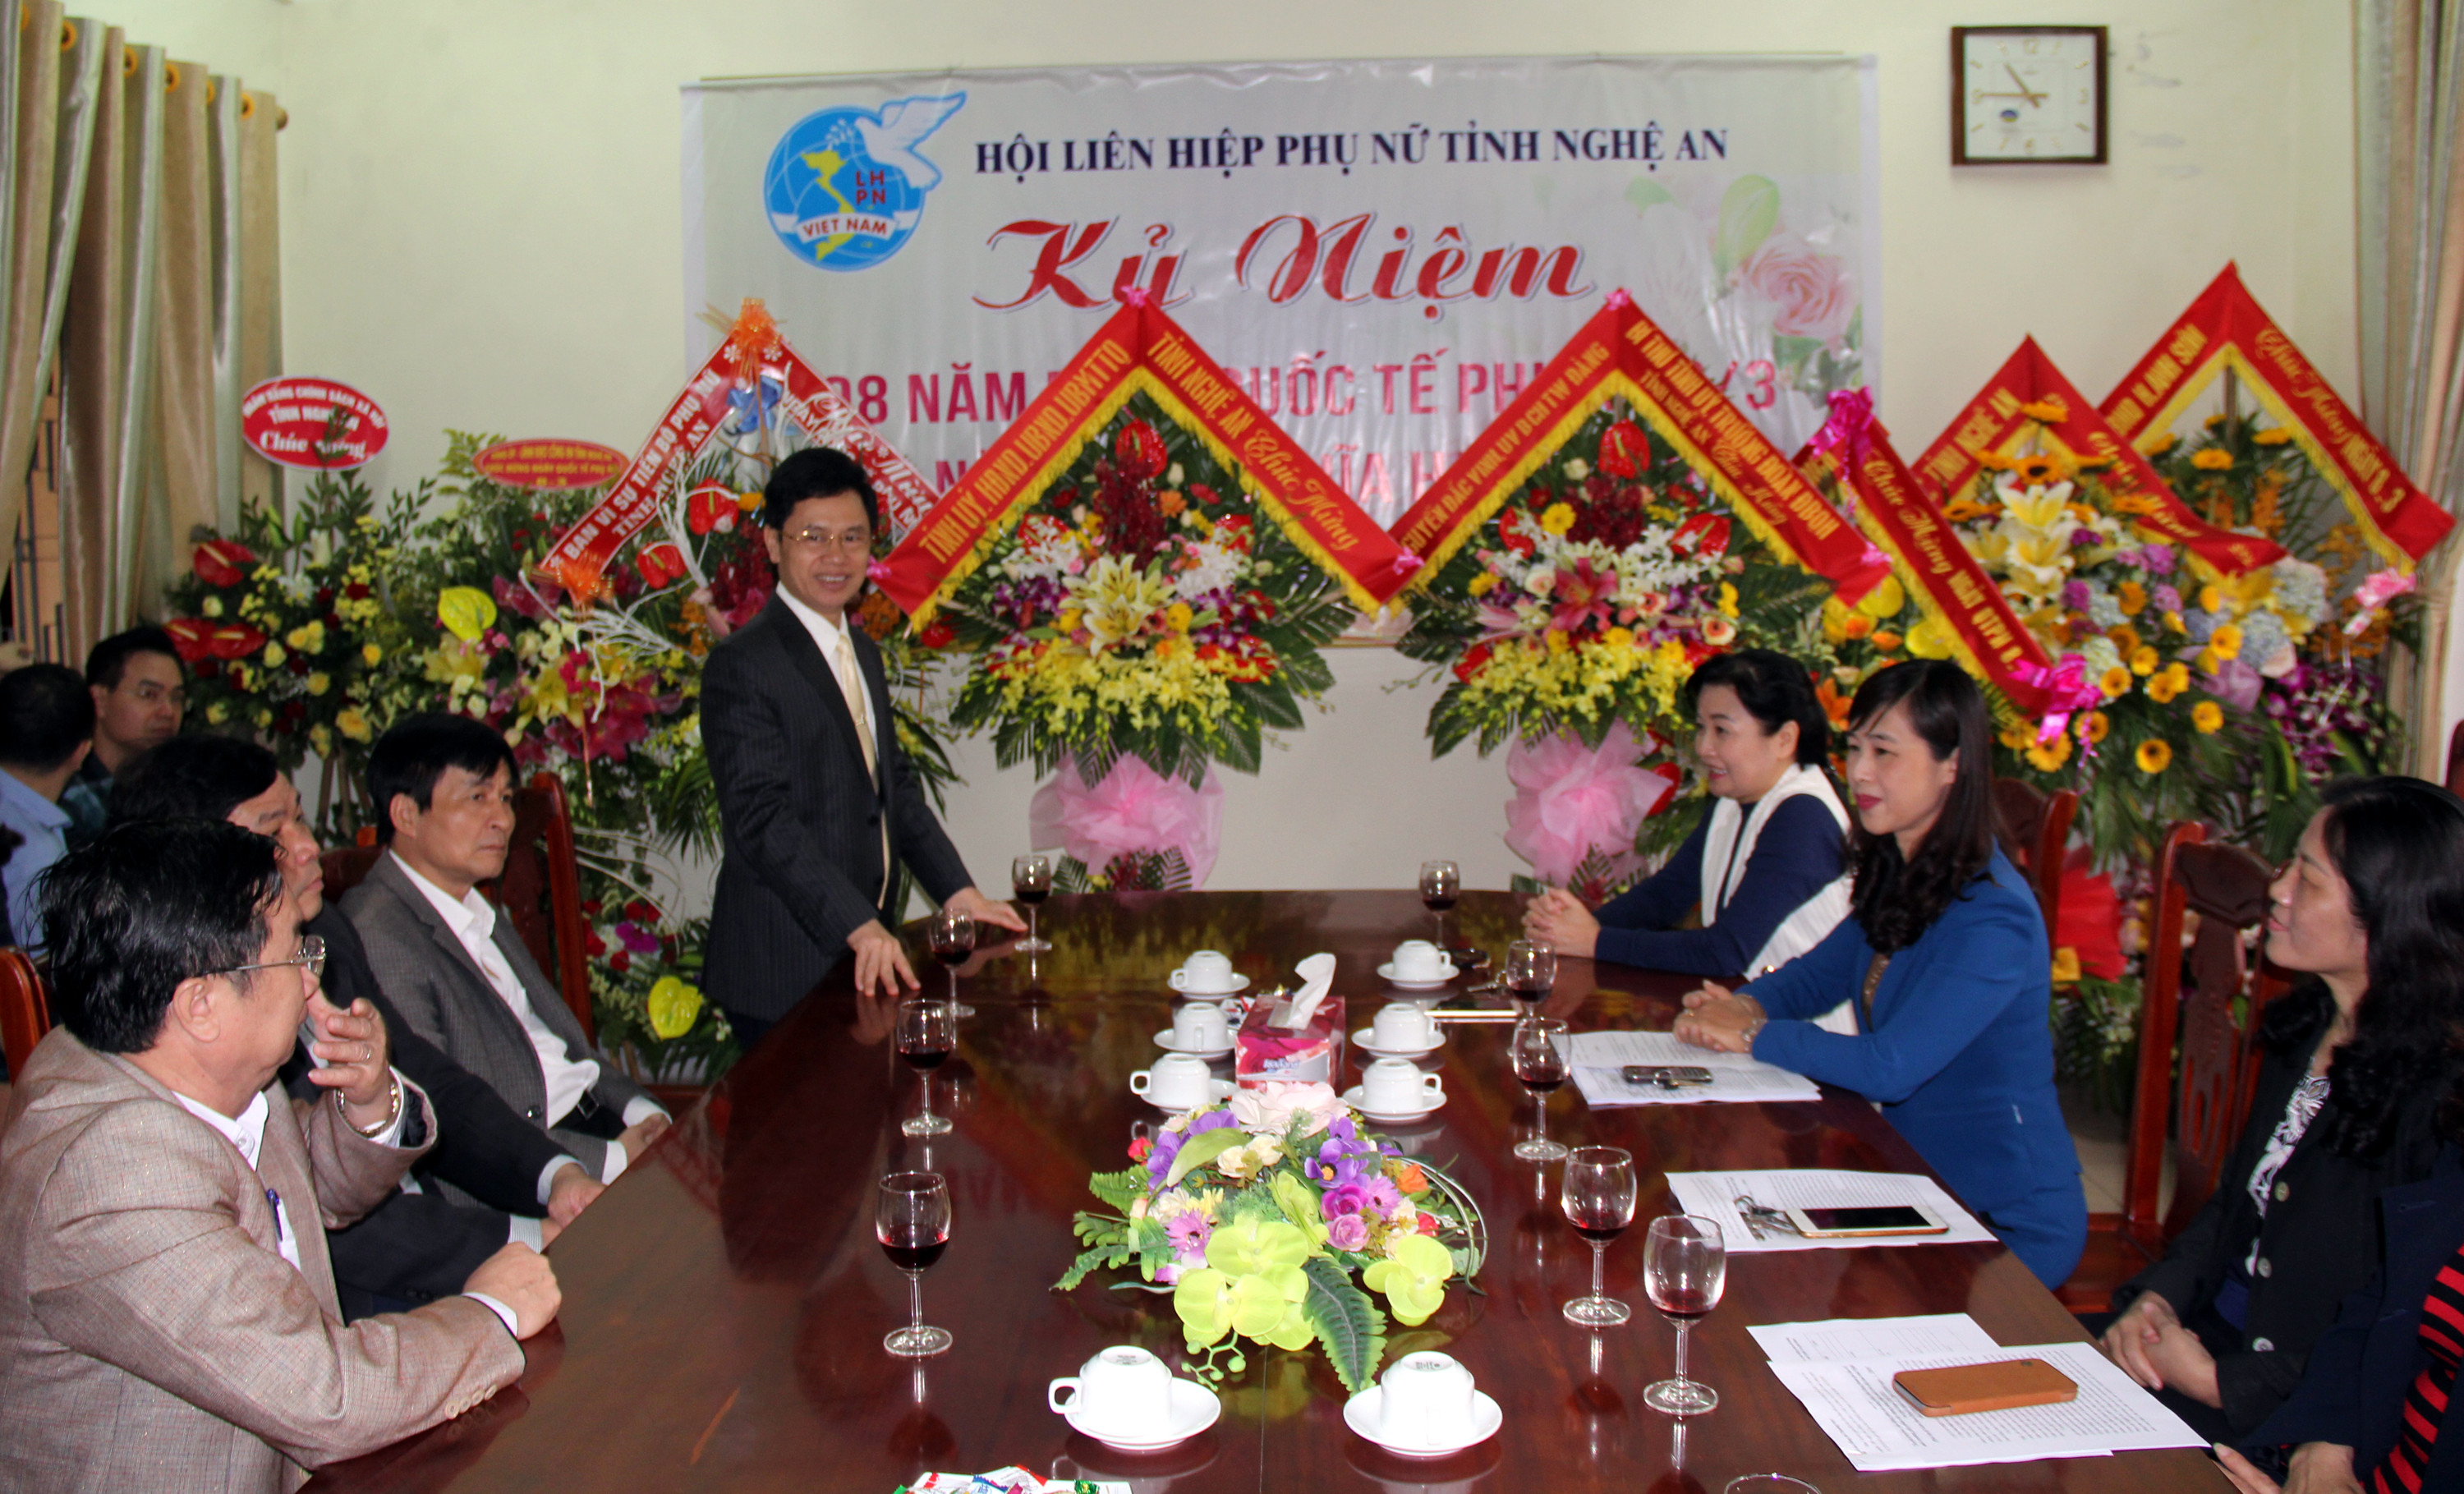 Đồng chí Nguyễn Xuân Sơn phát biểu tại buổi chúc mừng. Ảnh: Tiến Hùng